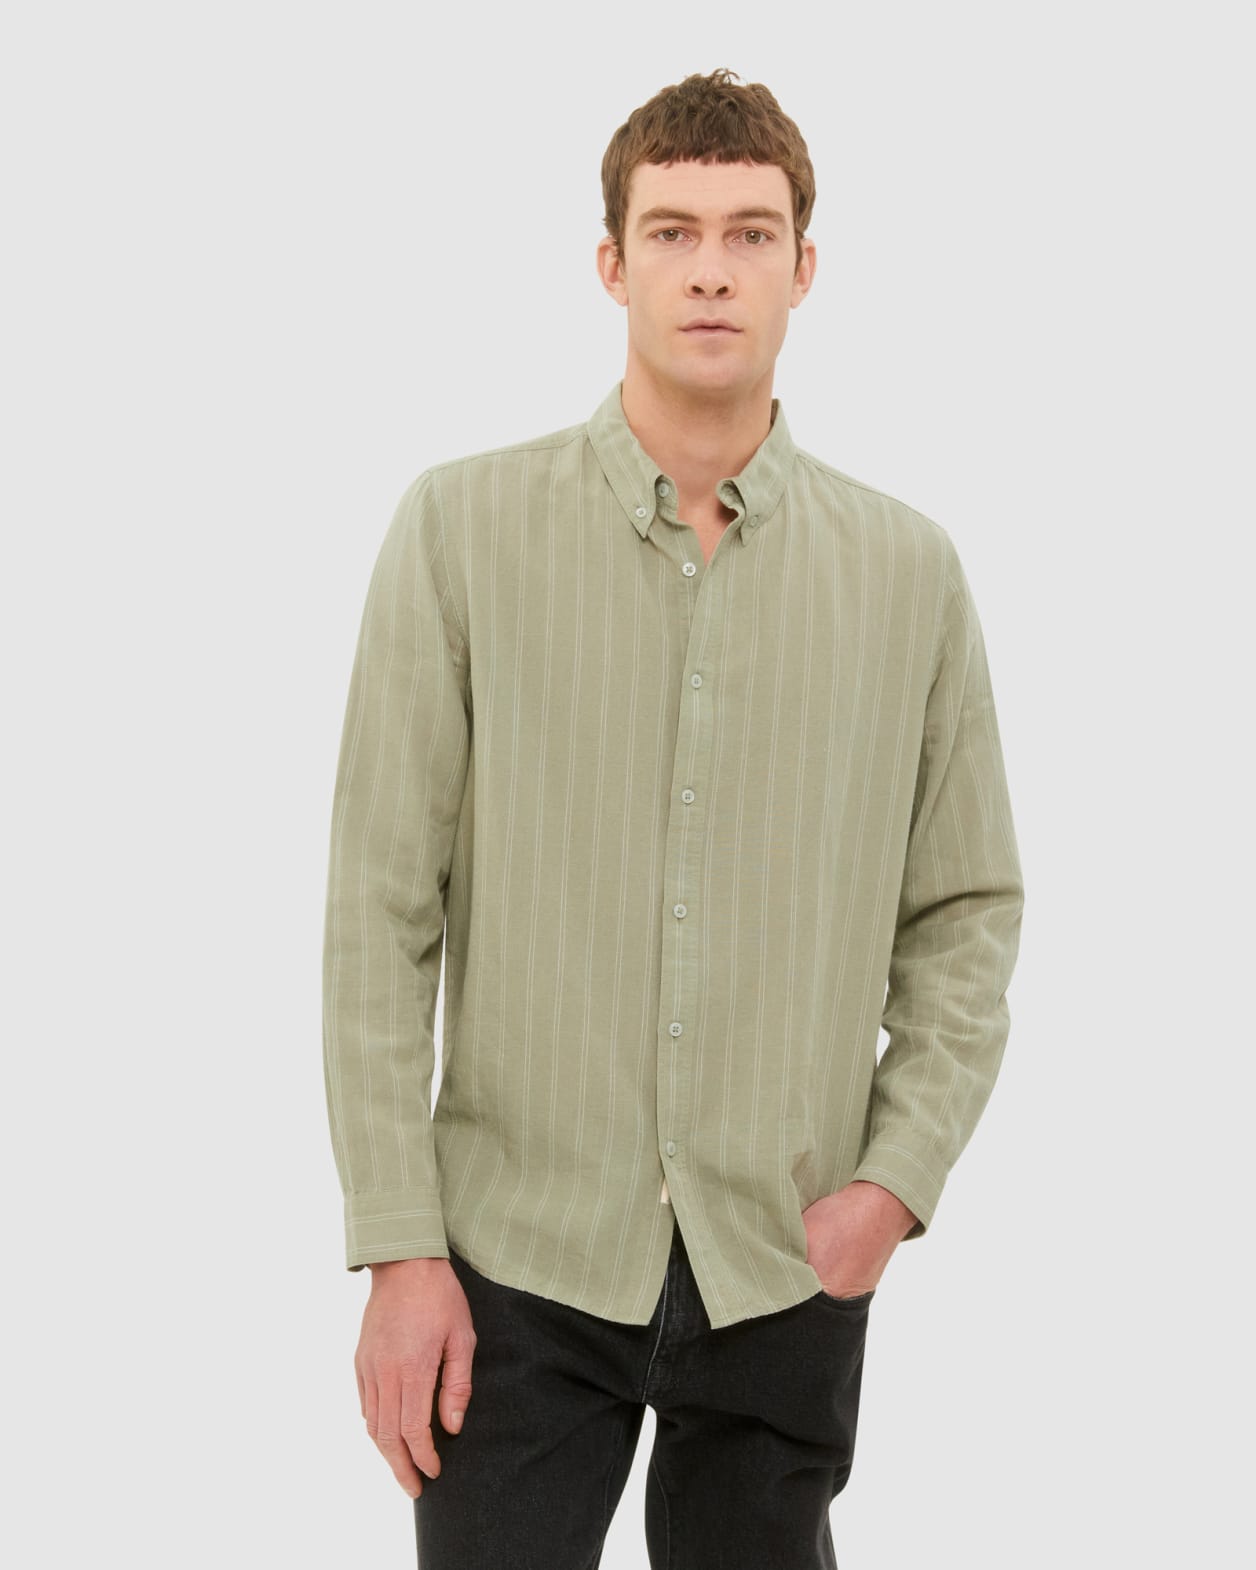 Stripe Lyocell Linen Shirt in Mint/Ivory